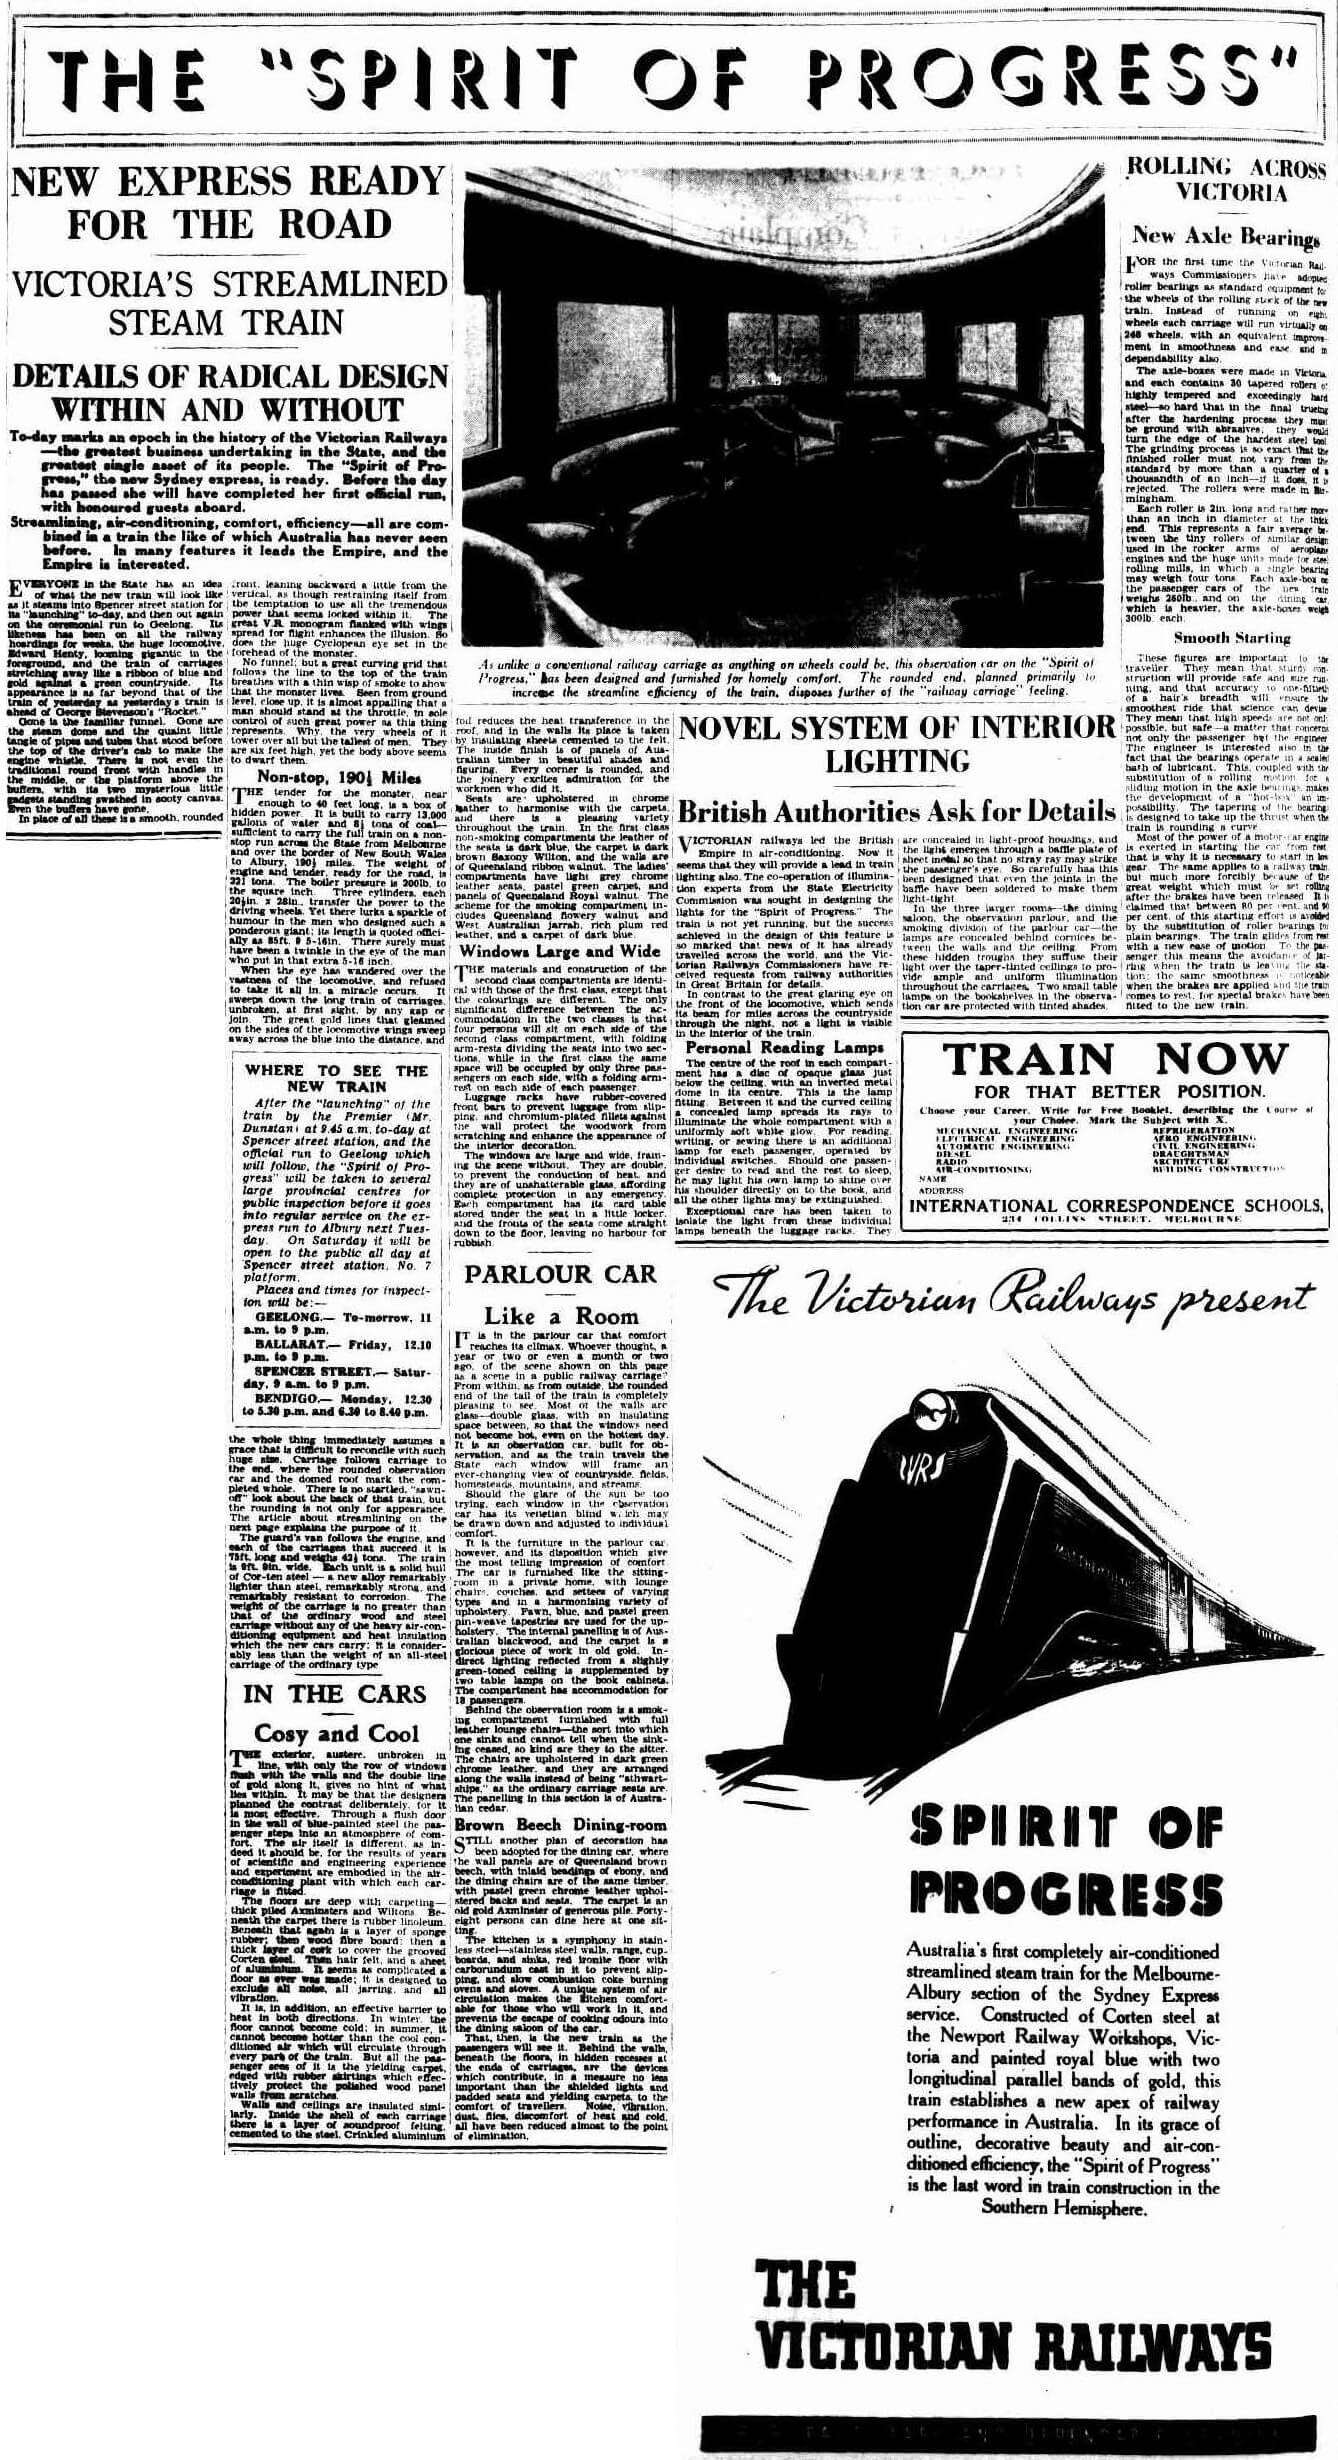 The Argus, 17 November 1937